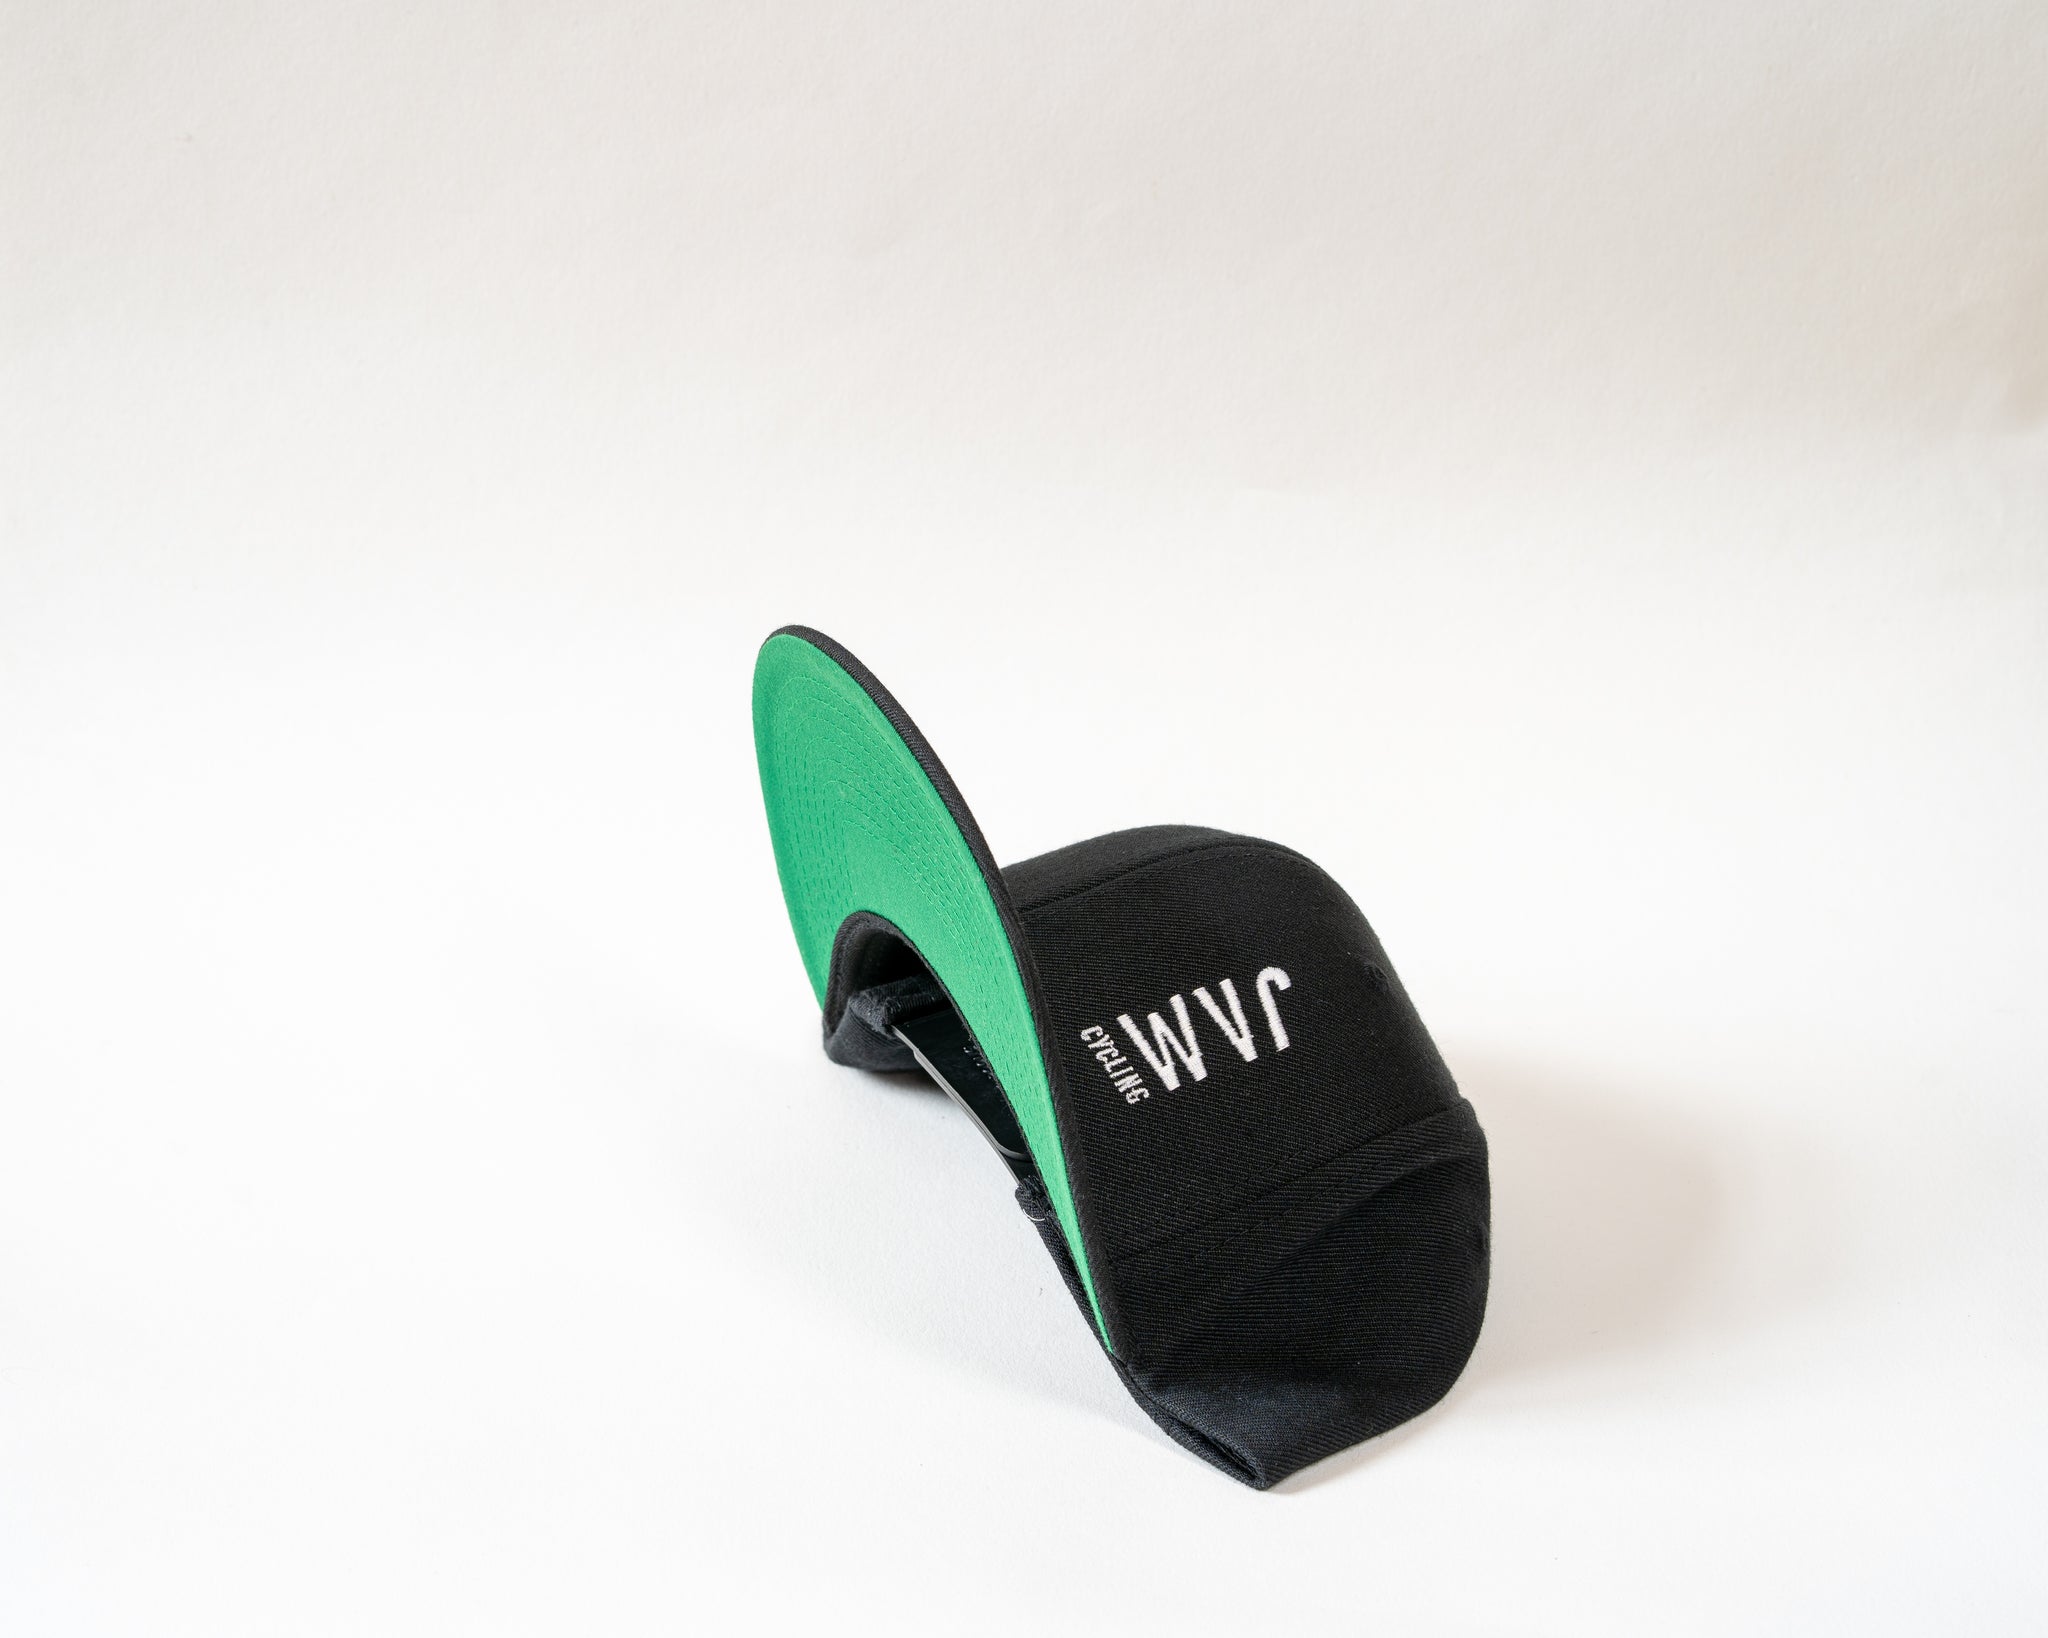 Jam Snapback cap showcasing green base stitched Jam logo symbol sitting on a white background cool product photography